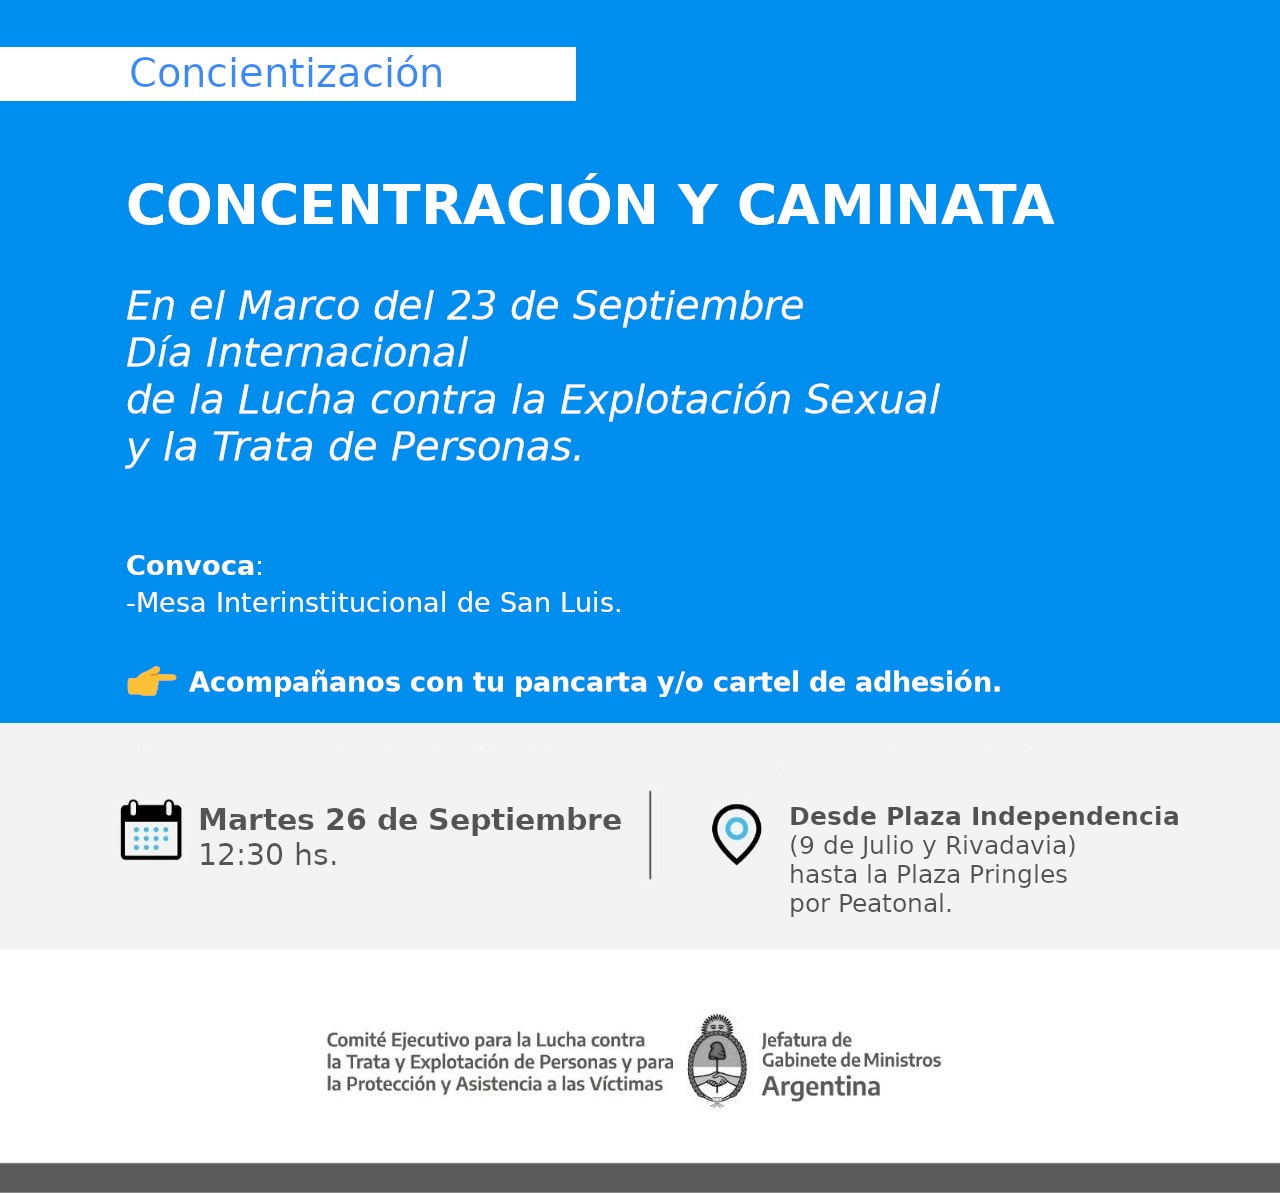 CAMINATA POR EL DÍA INTERNACIONAL DE LA LUCHA CONTRA LA EXPLOTACIÓN SEXUAL Y LA TRATA DE PERSONAS